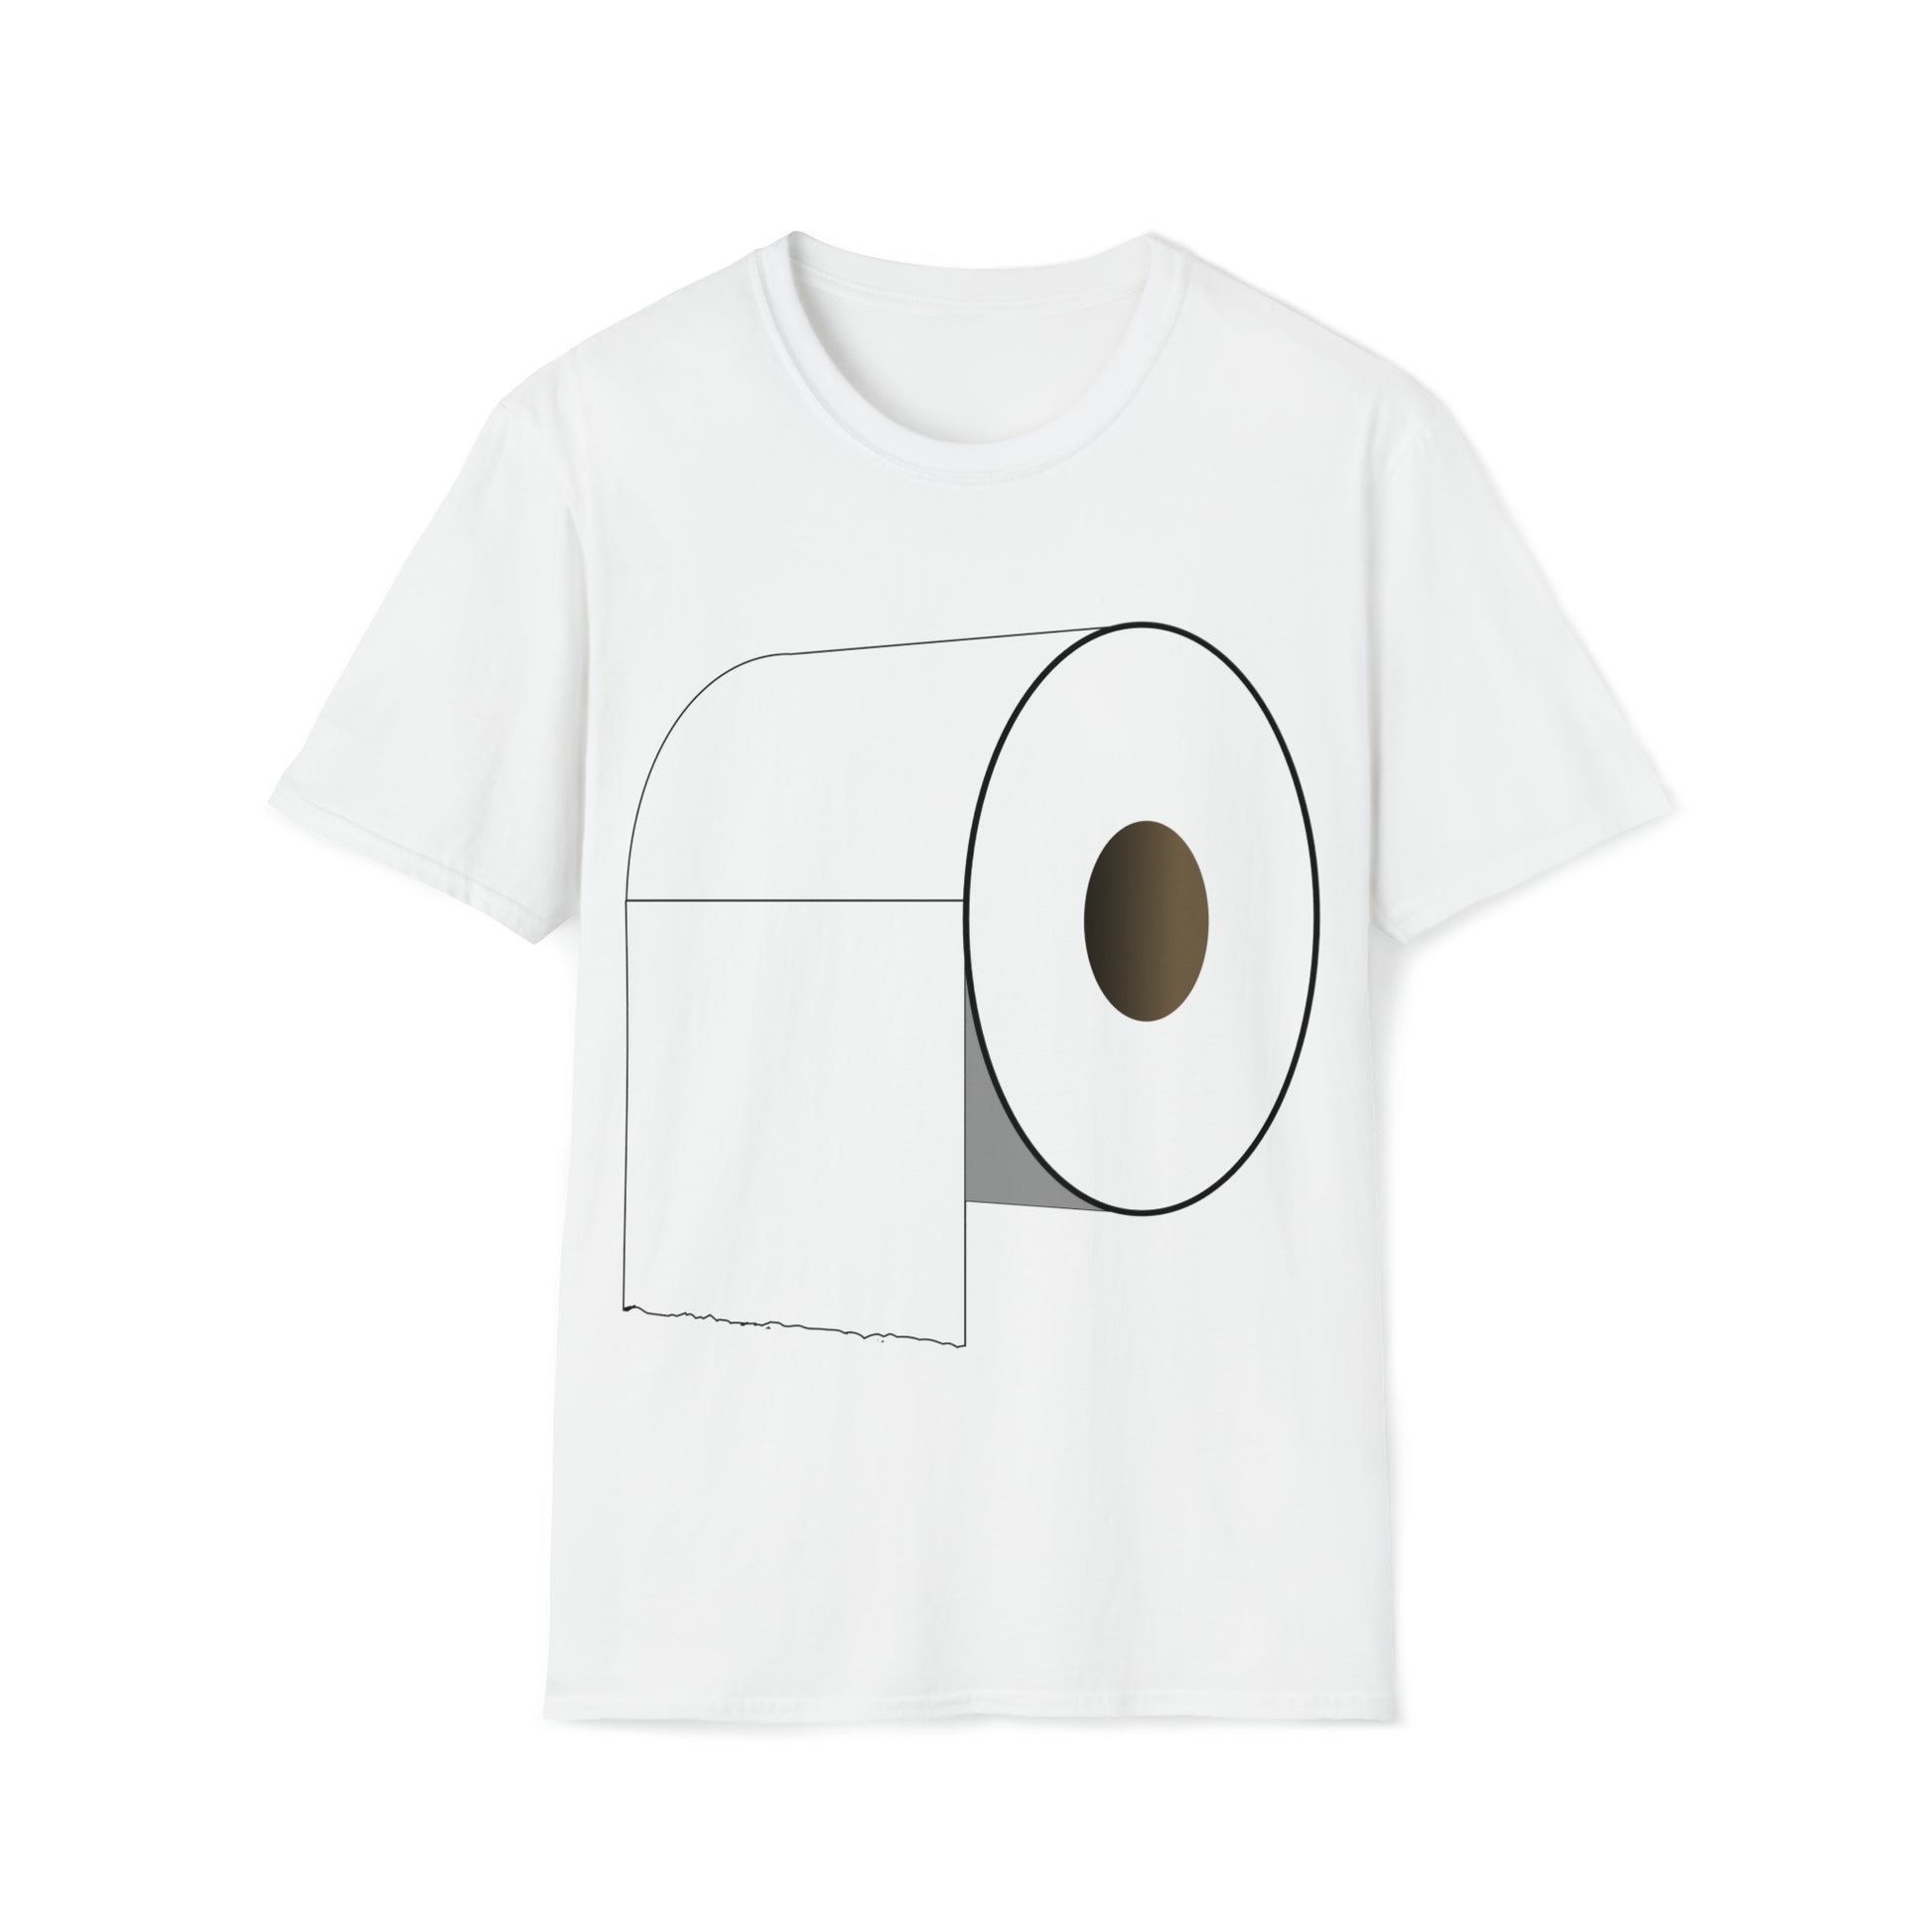 toilet roll tshirt